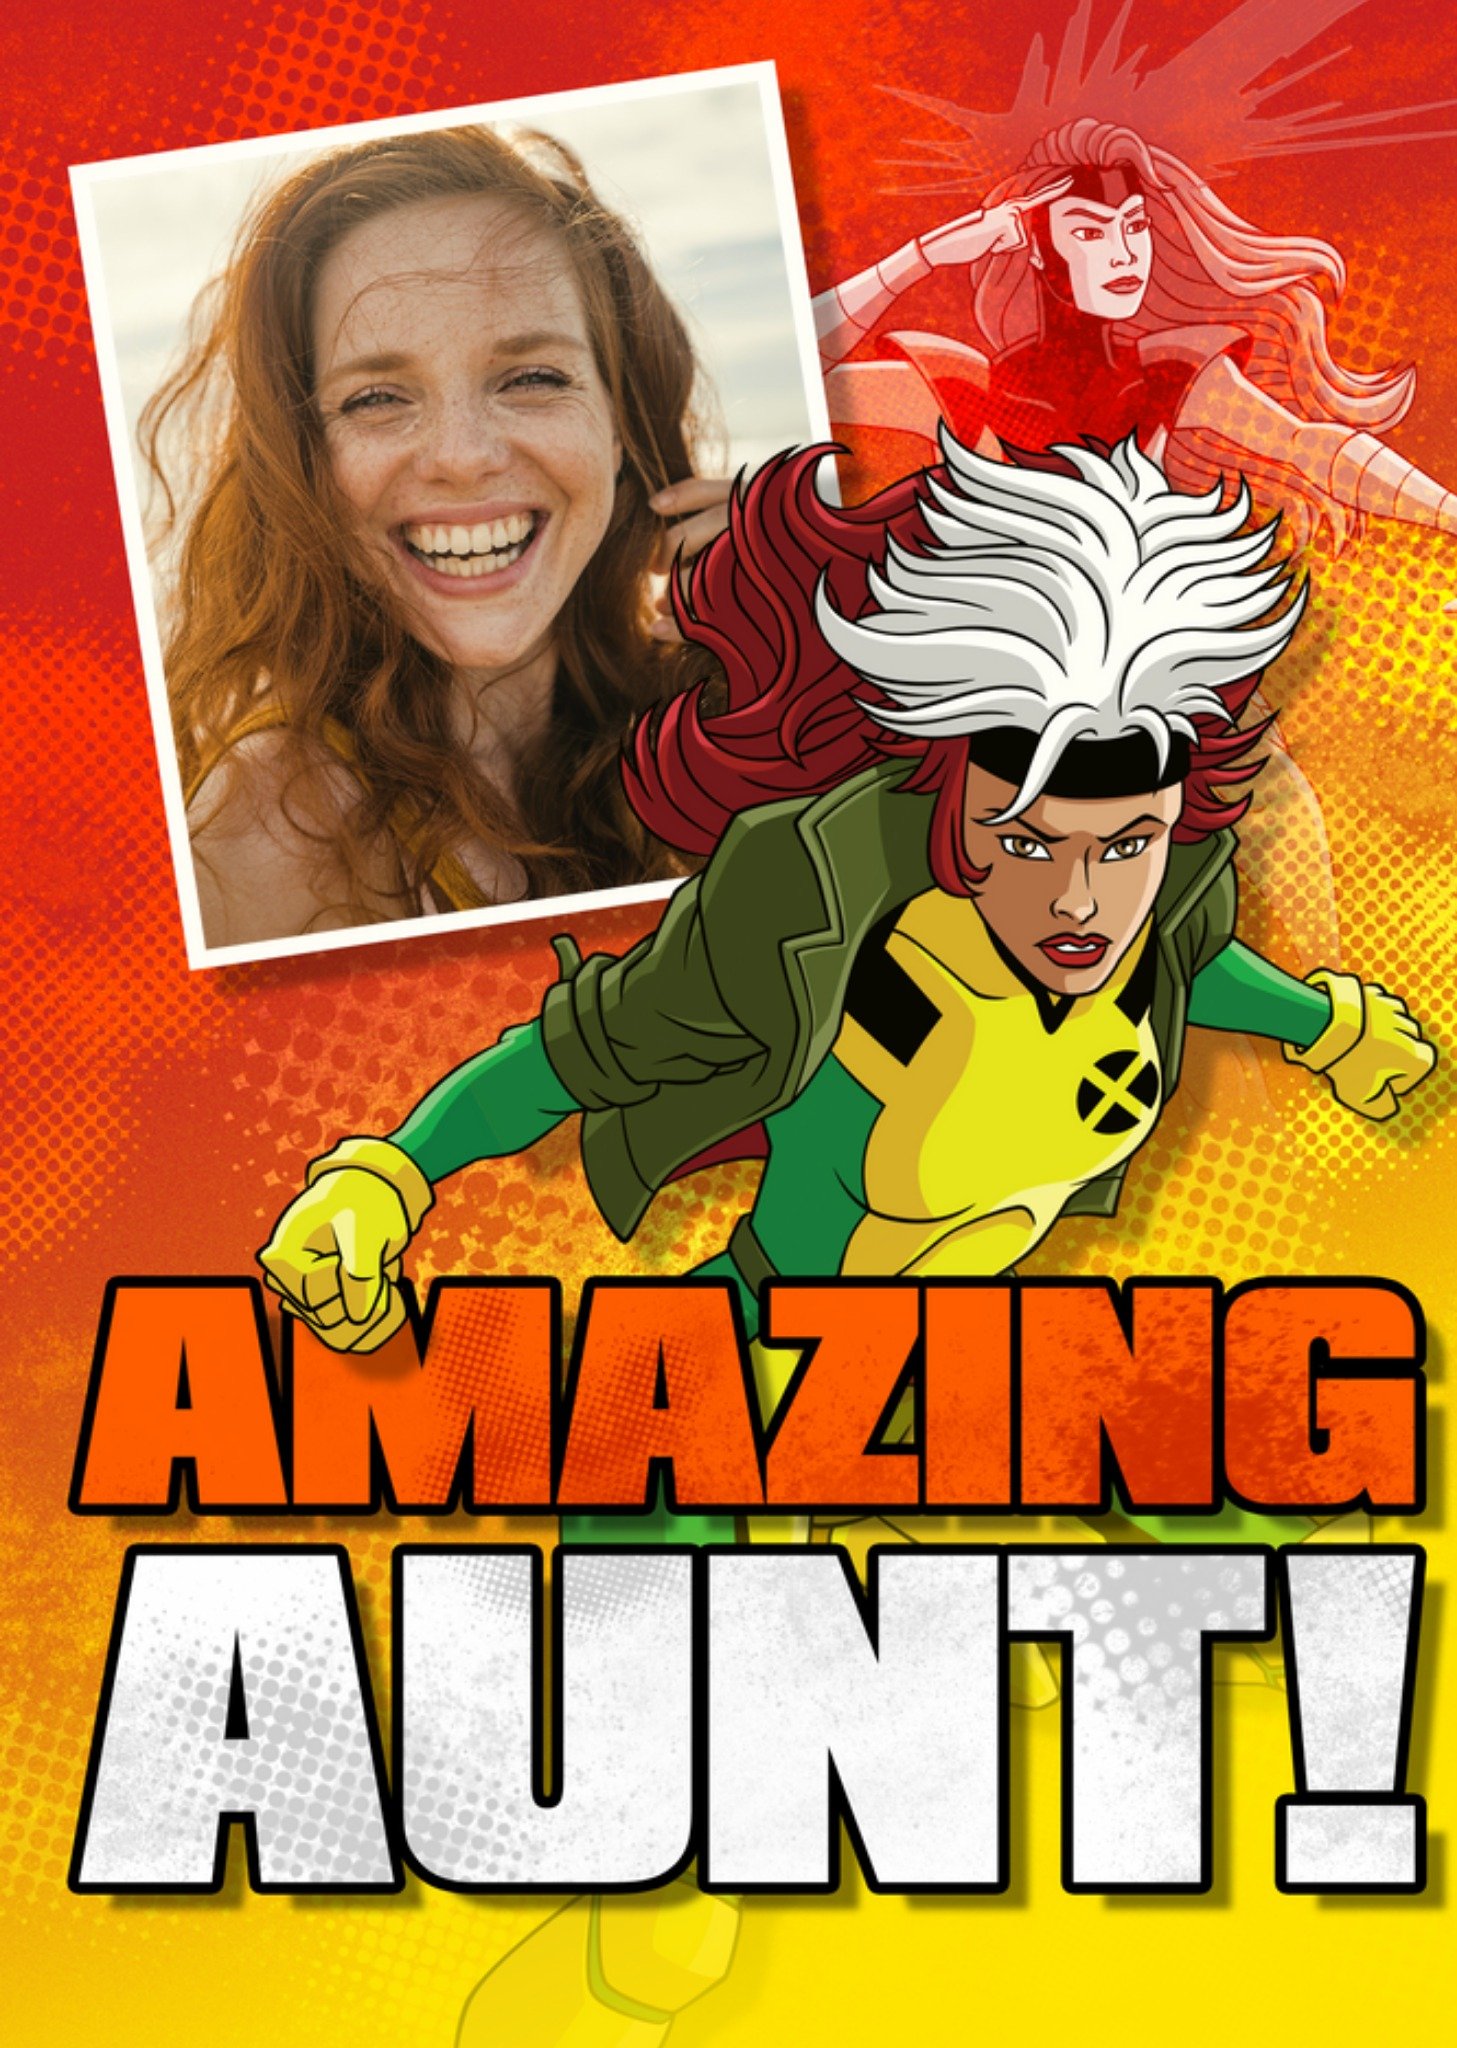 Marvel Xmen Amazing Aunt Card, Large